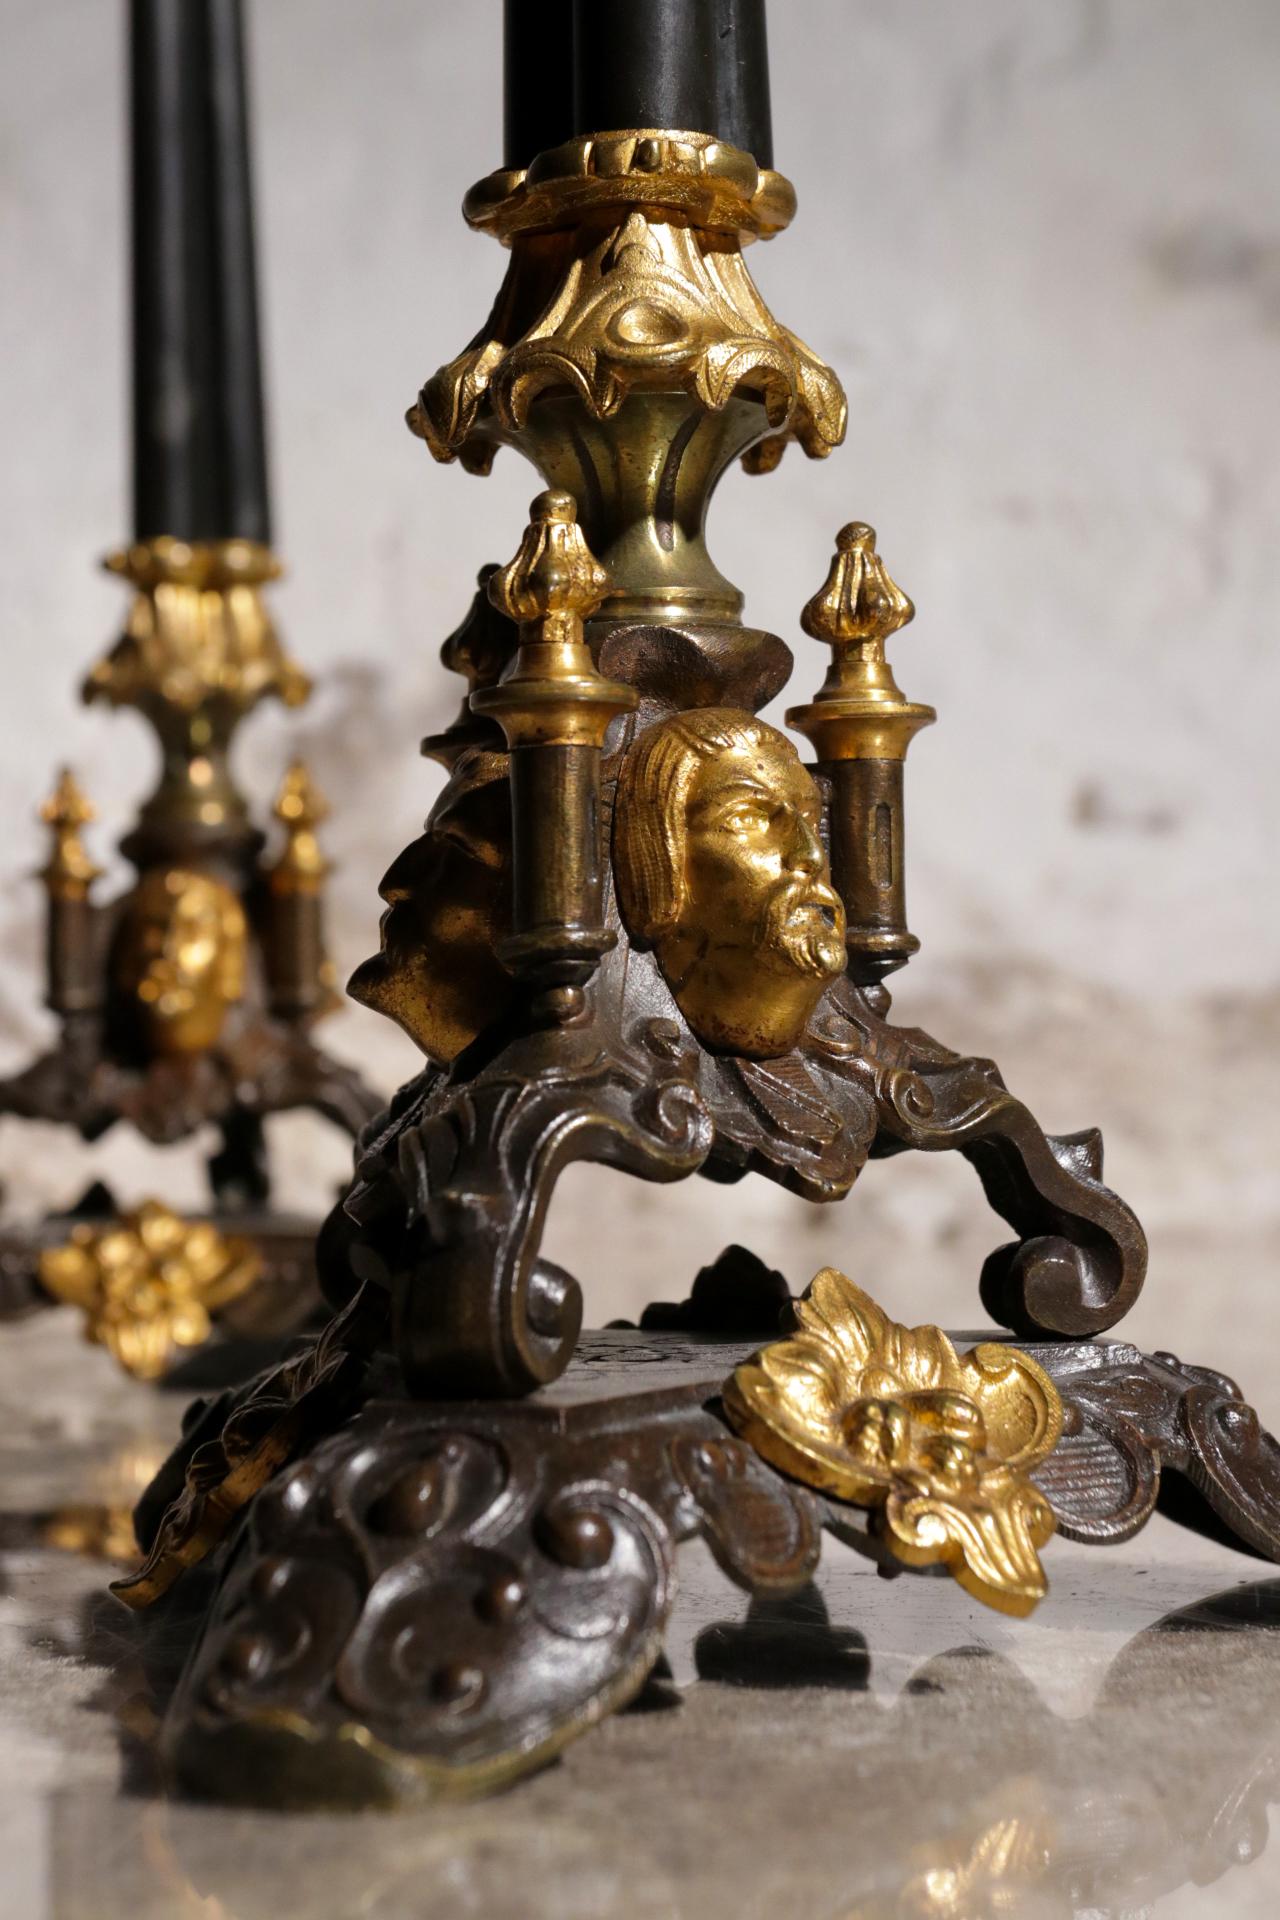 Paire de chandeliers néo-Renaissance de la seconde moitié du 19e siècle.
Richement décoré sur tous les côtés, il est parfait pour la table à manger.
Merveilleux cadeau

Dimensions : 47 cm de hauteur et 19 cm de diamètre des bras de bougie.